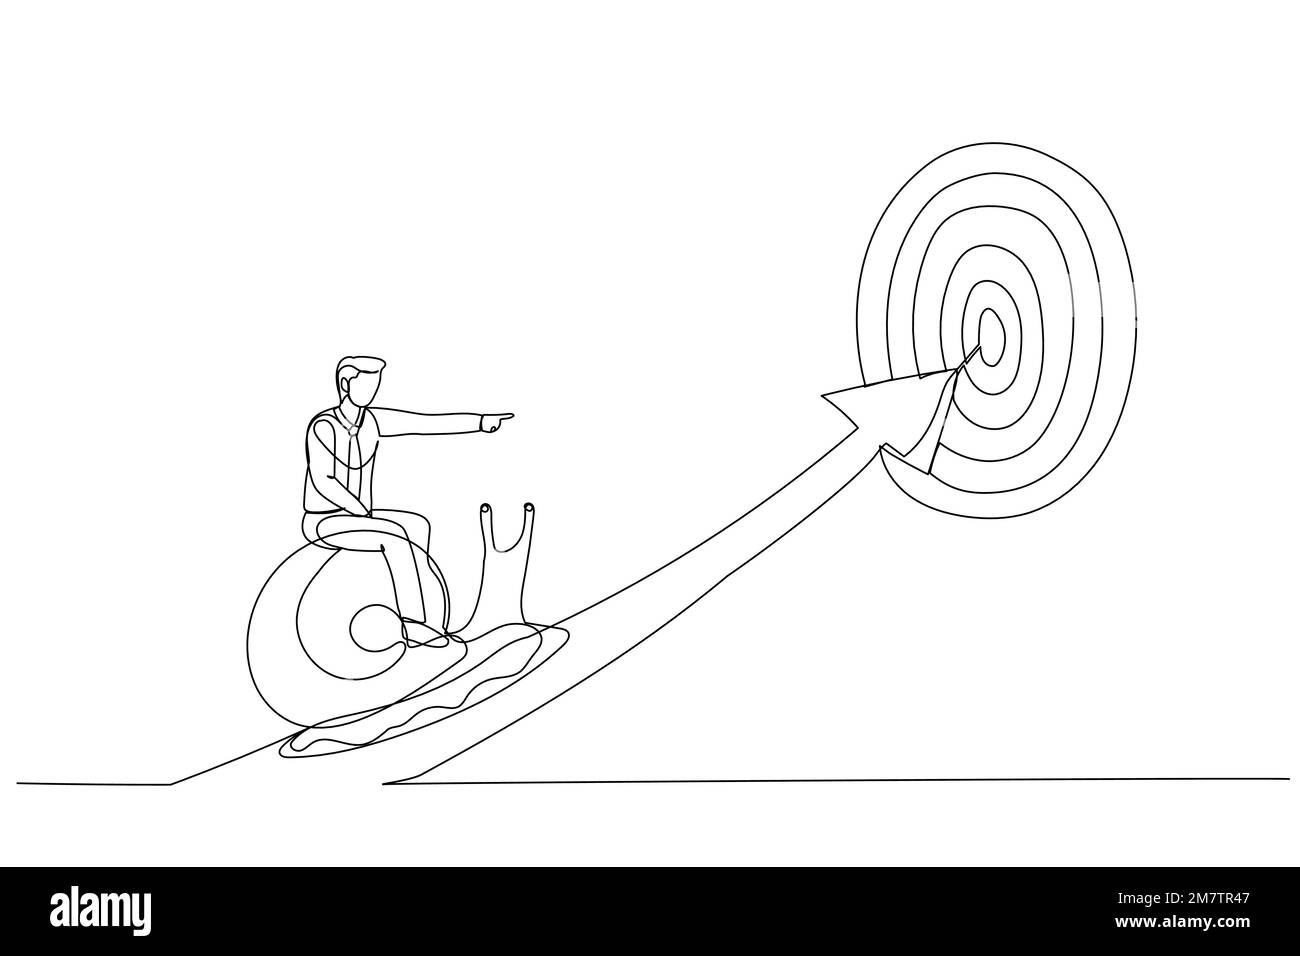 Illustrazione di un uomo d'affari provato a cavallo lumaca lento a piedi sulla freccia per raggiungere l'obiettivo. Metafora del lento progresso aziendale, della pigrizia o della procrastinazione Illustrazione Vettoriale